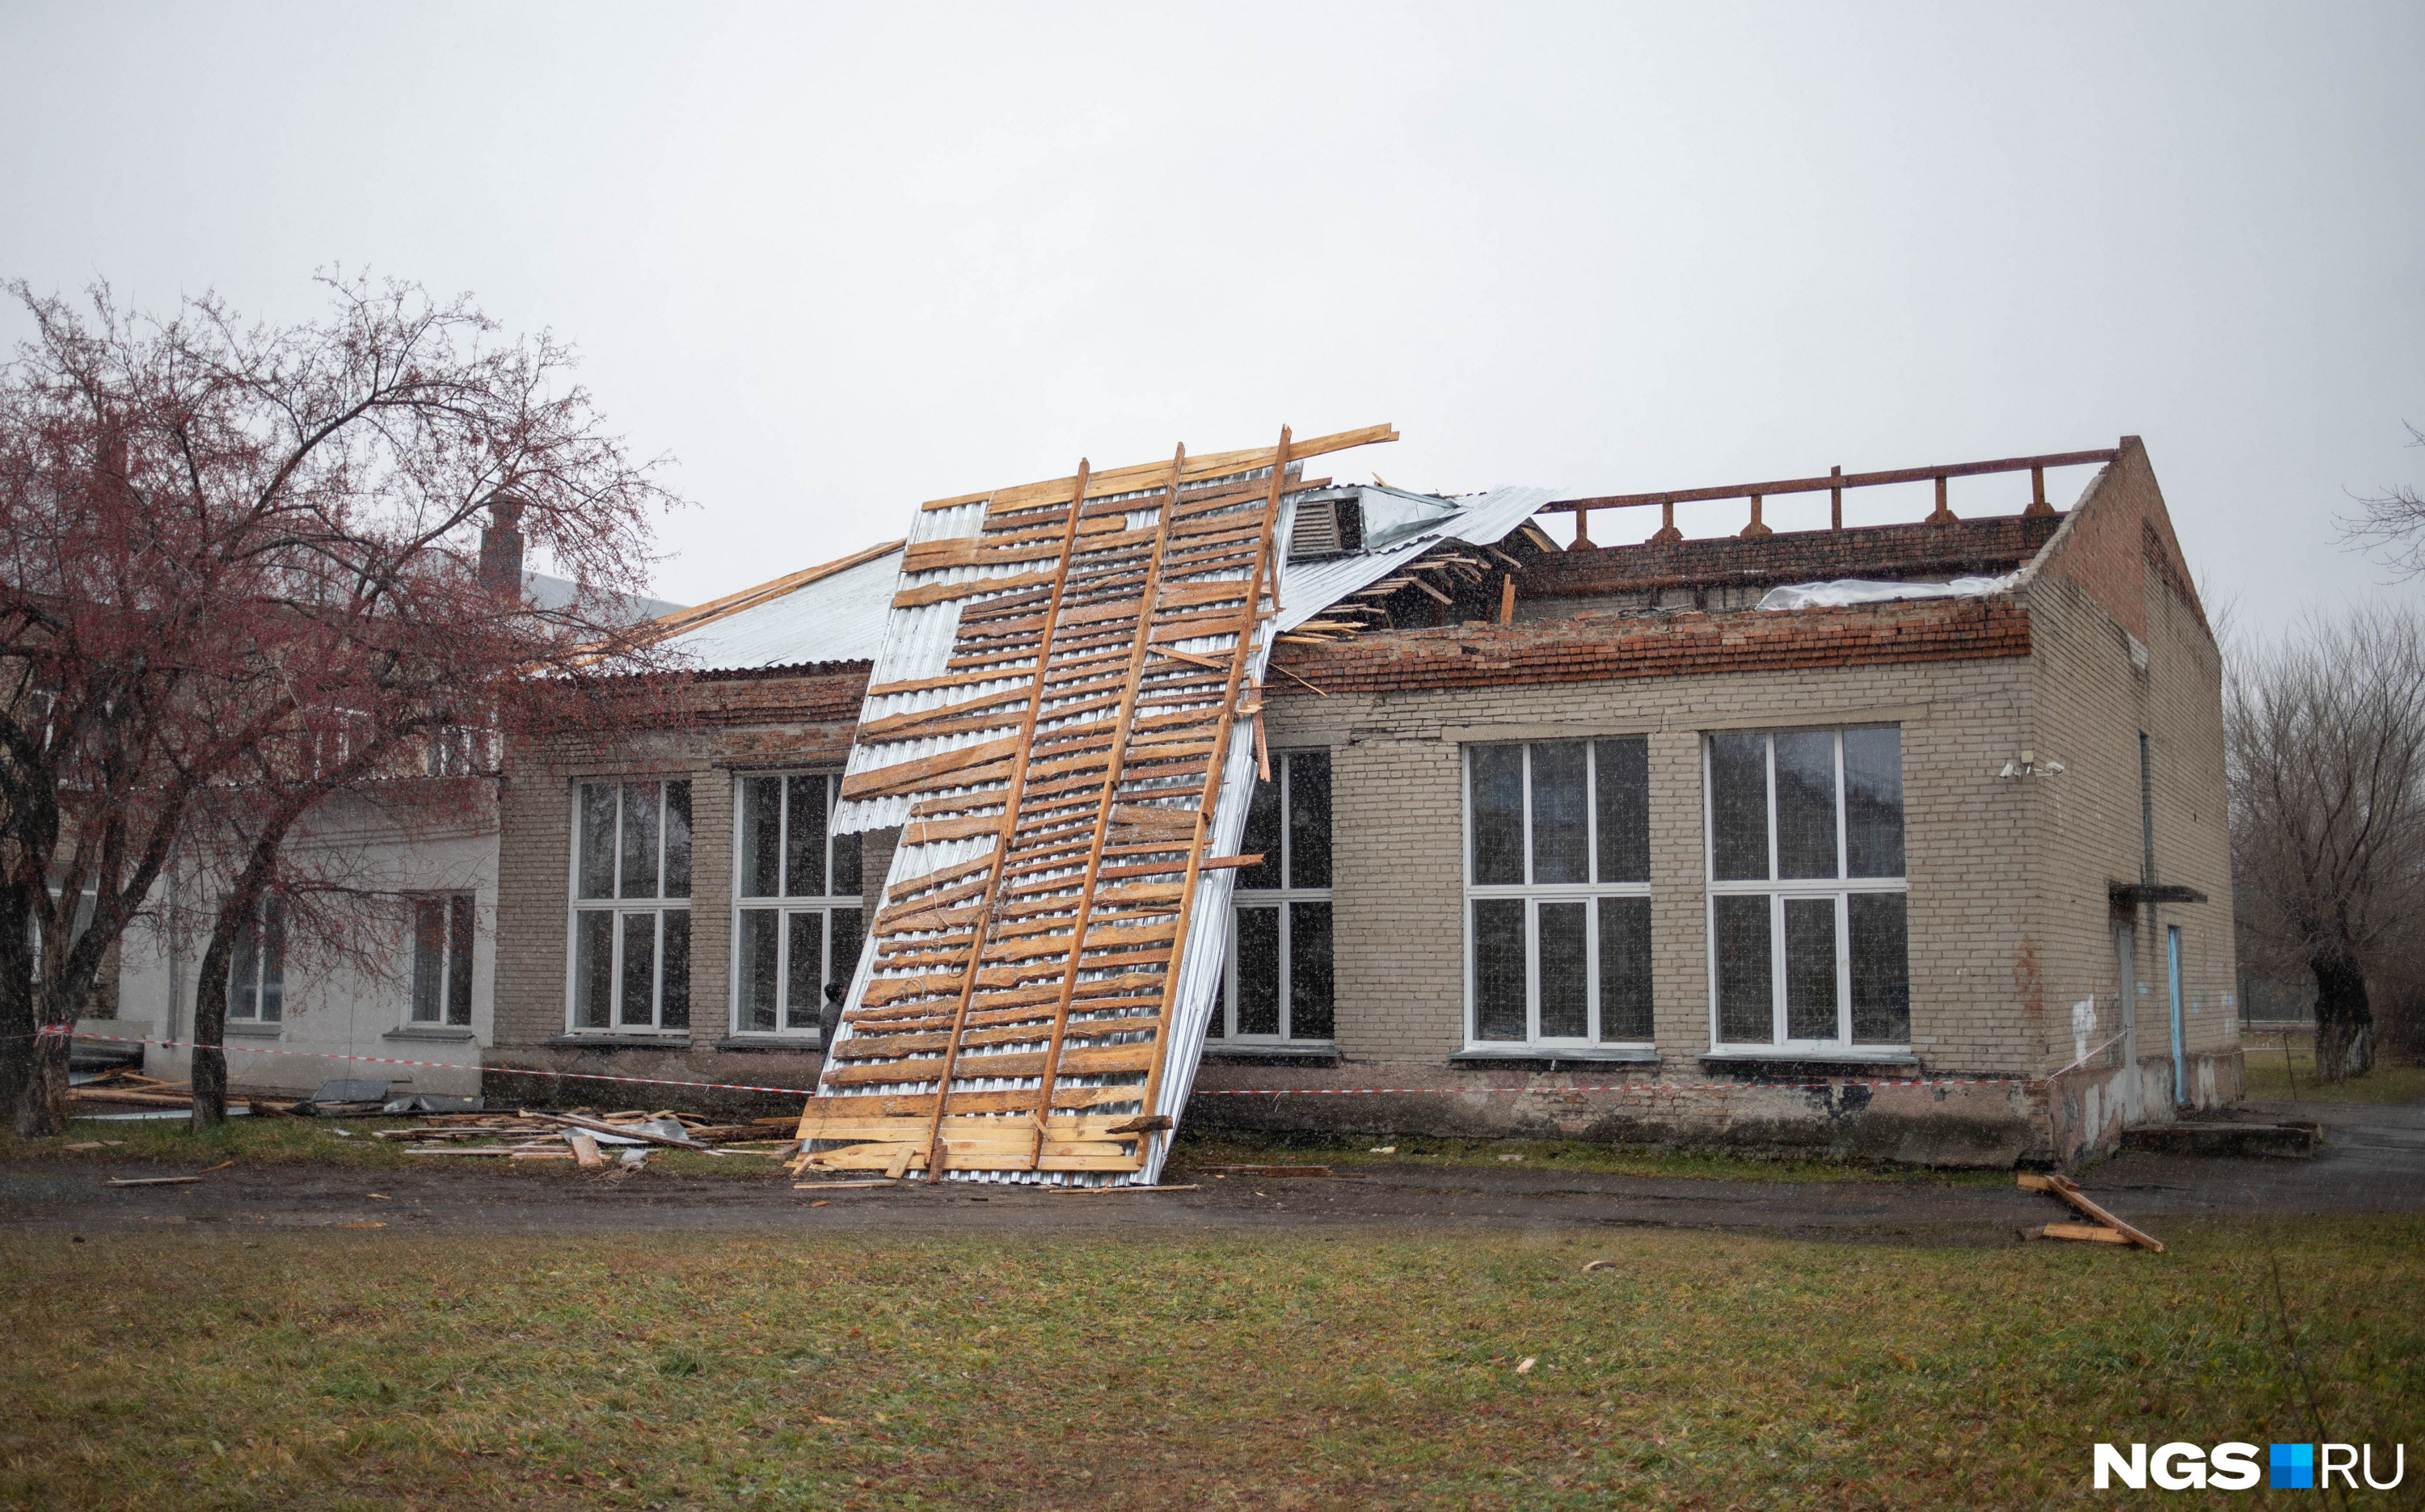 Как восстанавливают съехавшую крышу у школы — 10 фото с места происшествия под Новосибирском